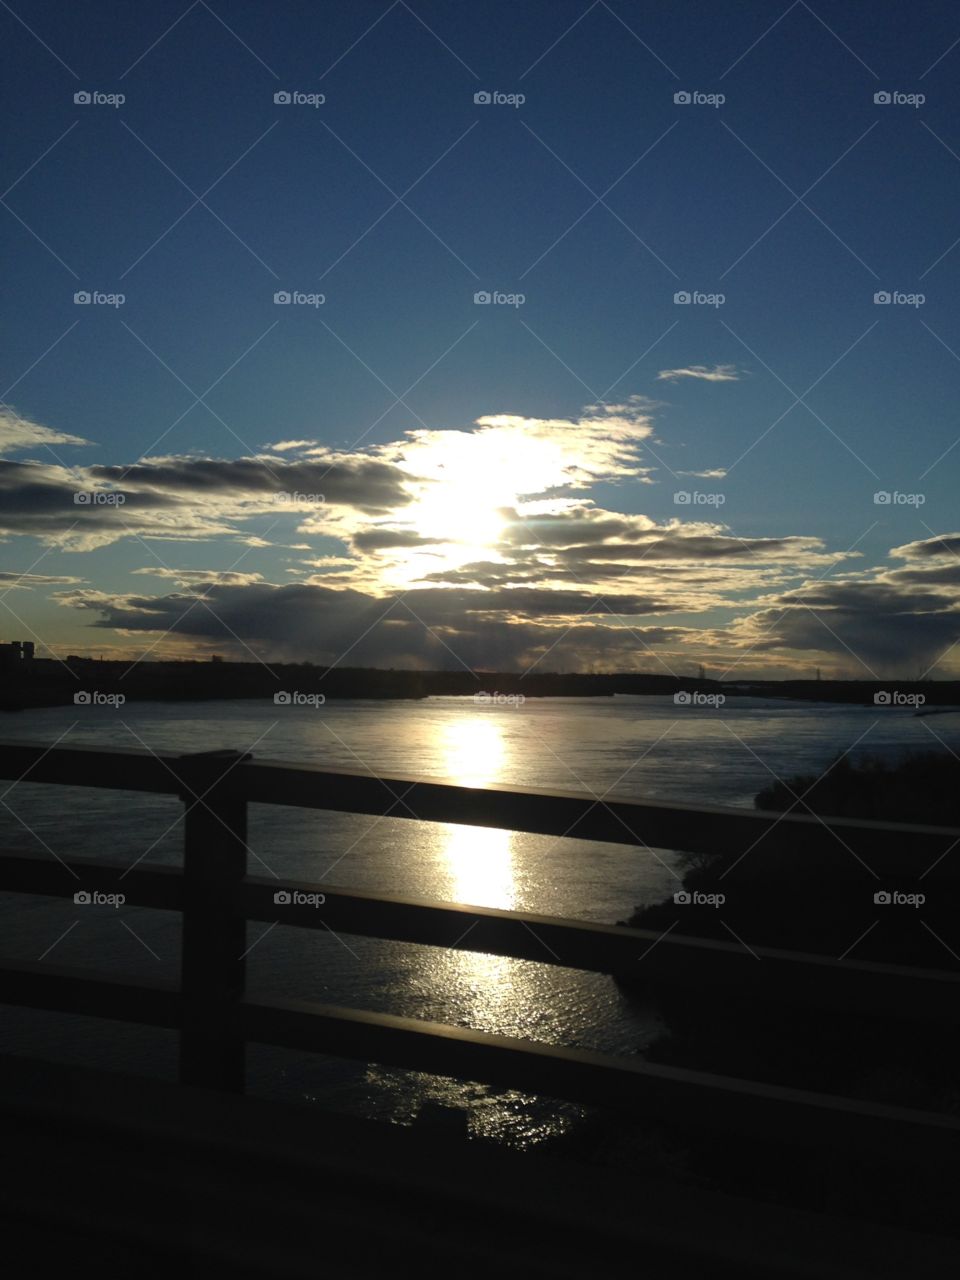 Sunset on the Bridge 